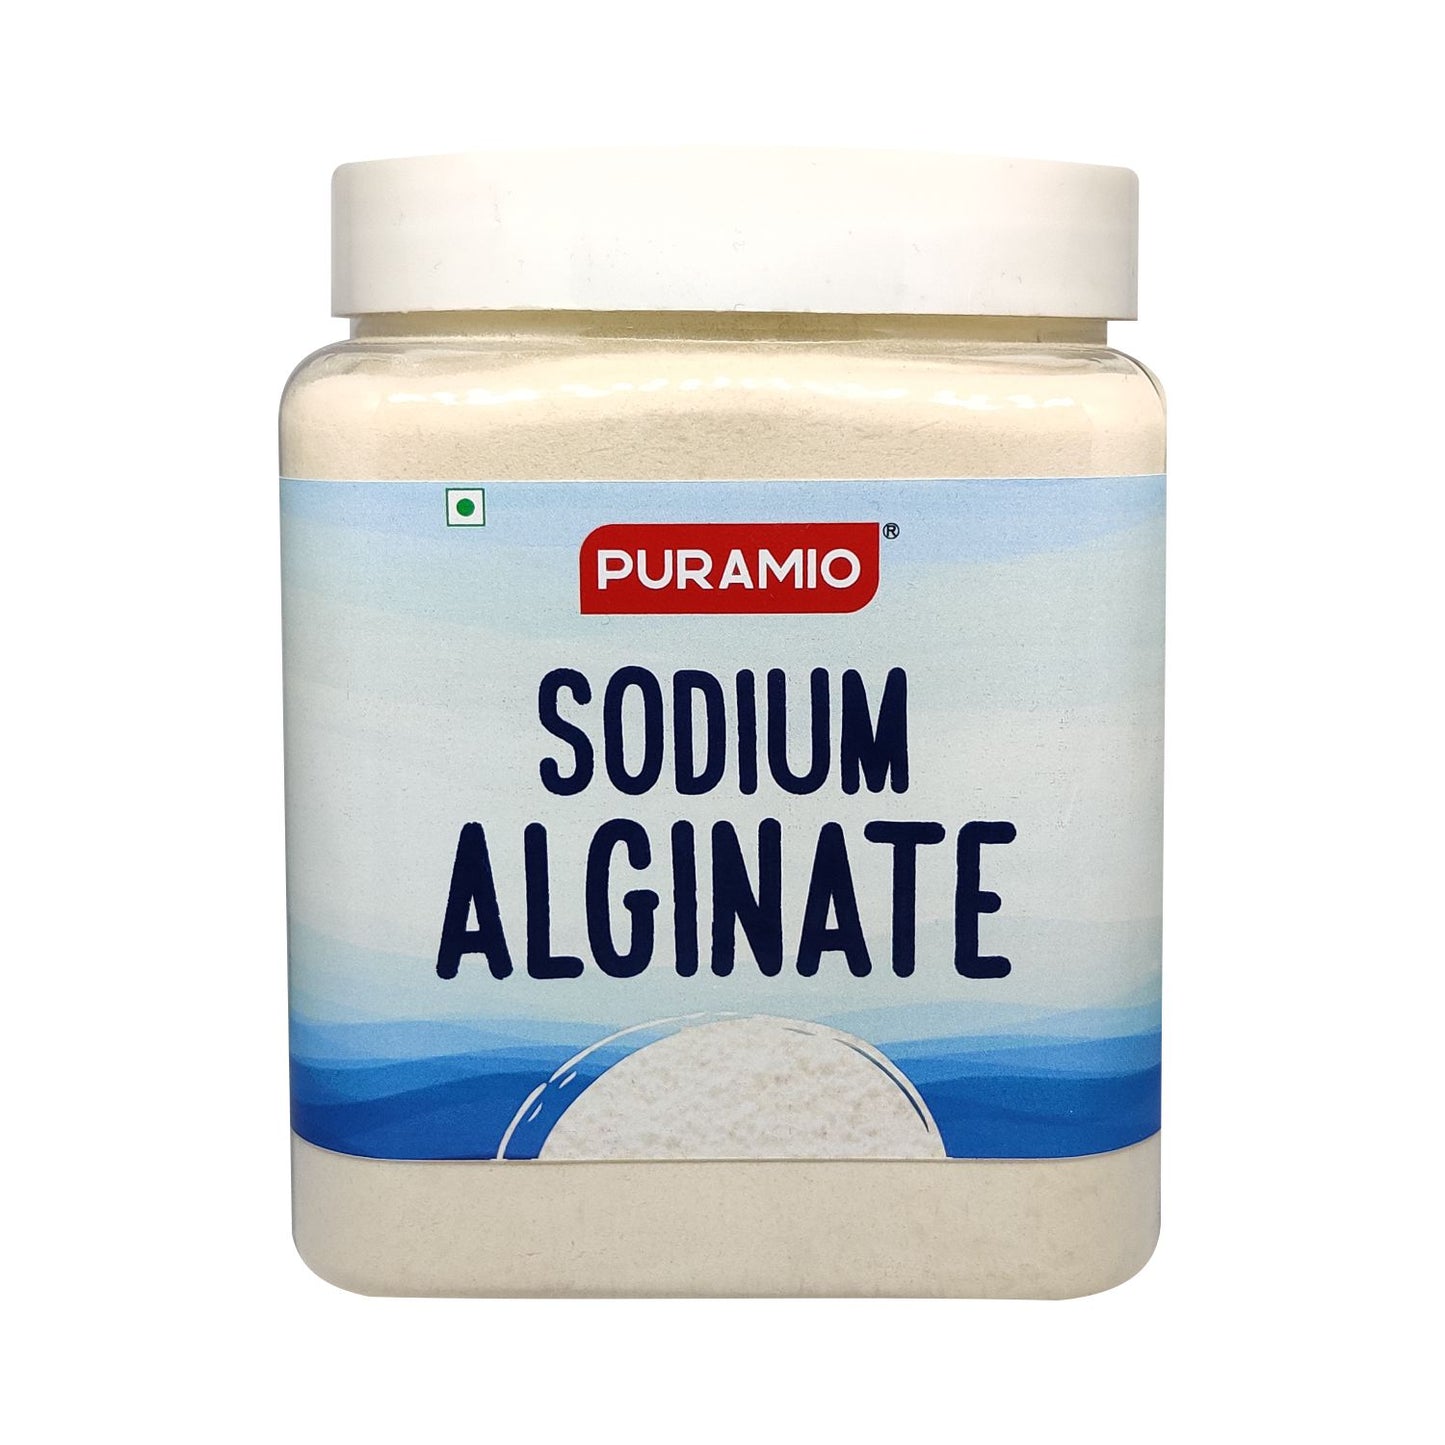 Puramio Sodium Alginate, for Stabilizer,Thickening,